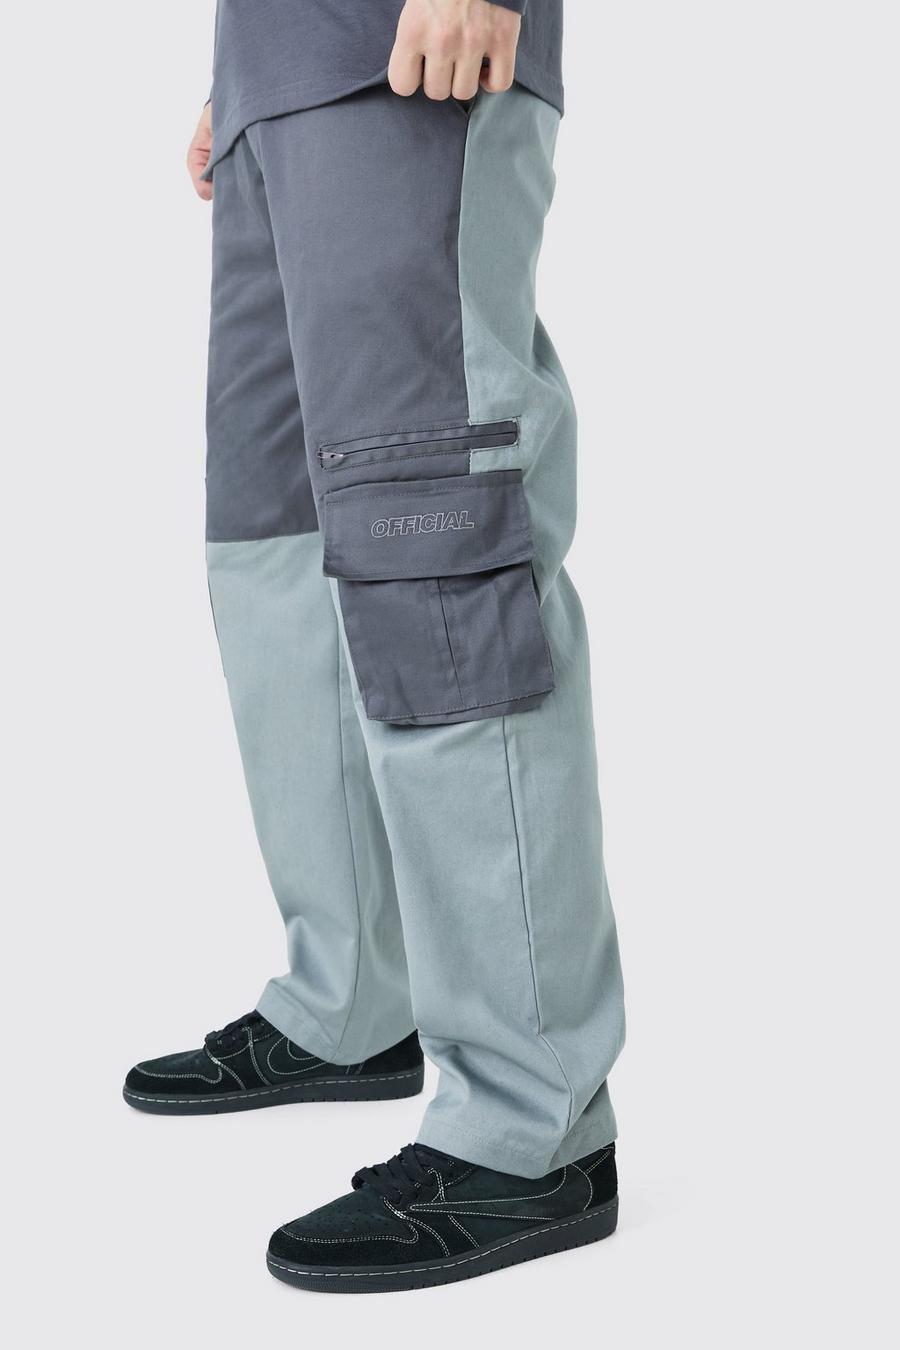 Pantaloni Cargo Tall rilassati a blocchi di colore con logo Official, Charcoal image number 1